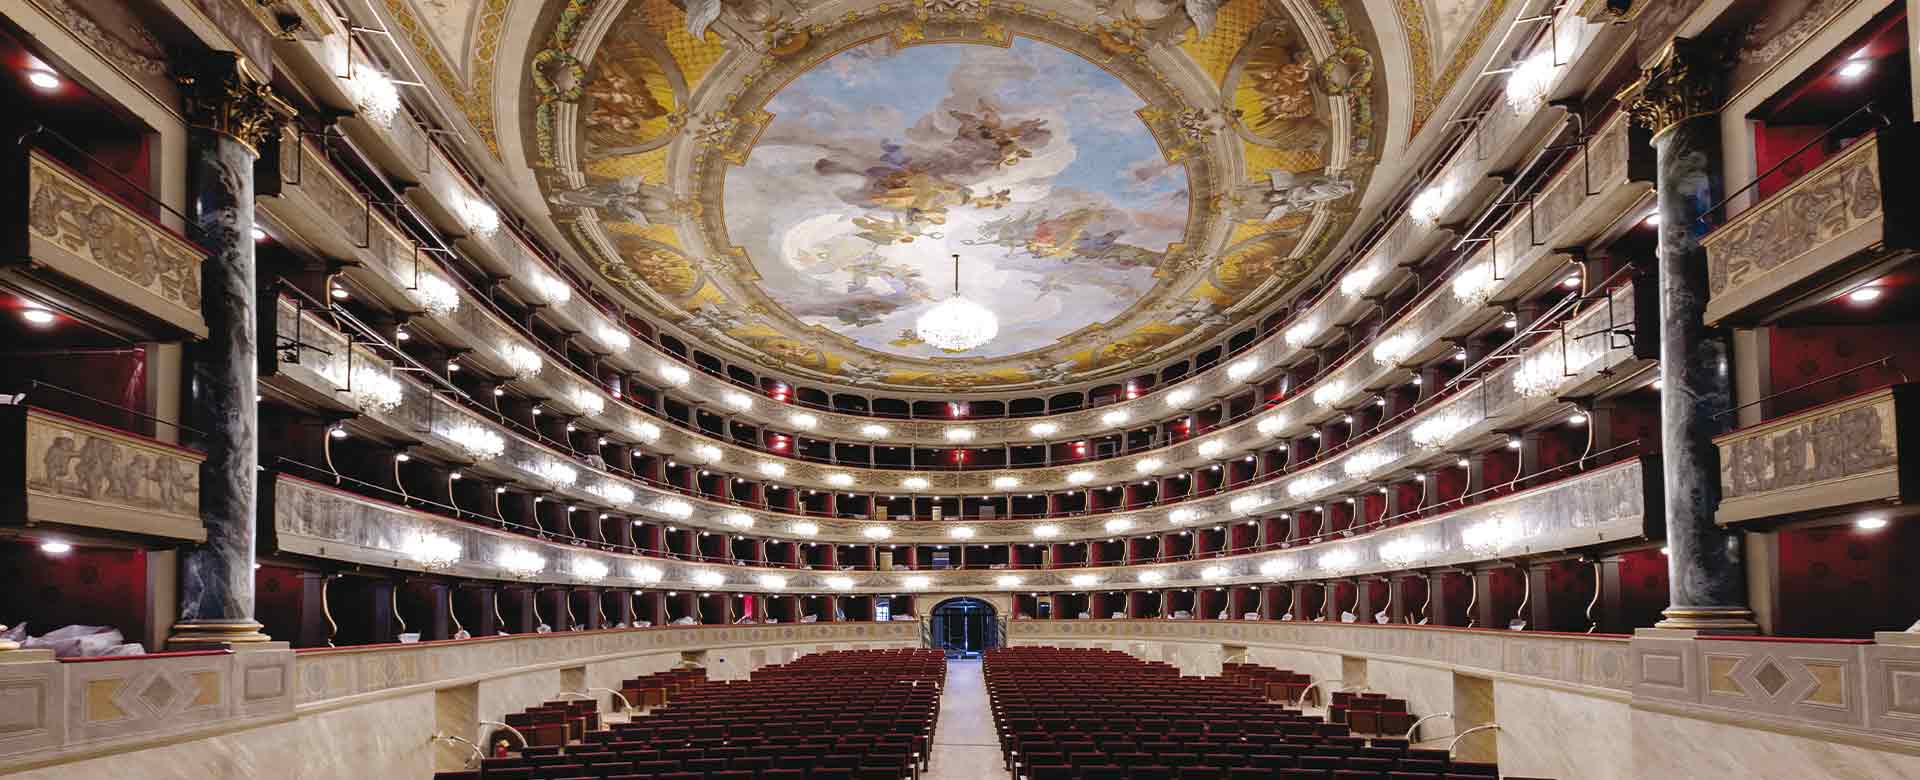 Immagine del Teatro Donizetti di Bergamo appena restaurato